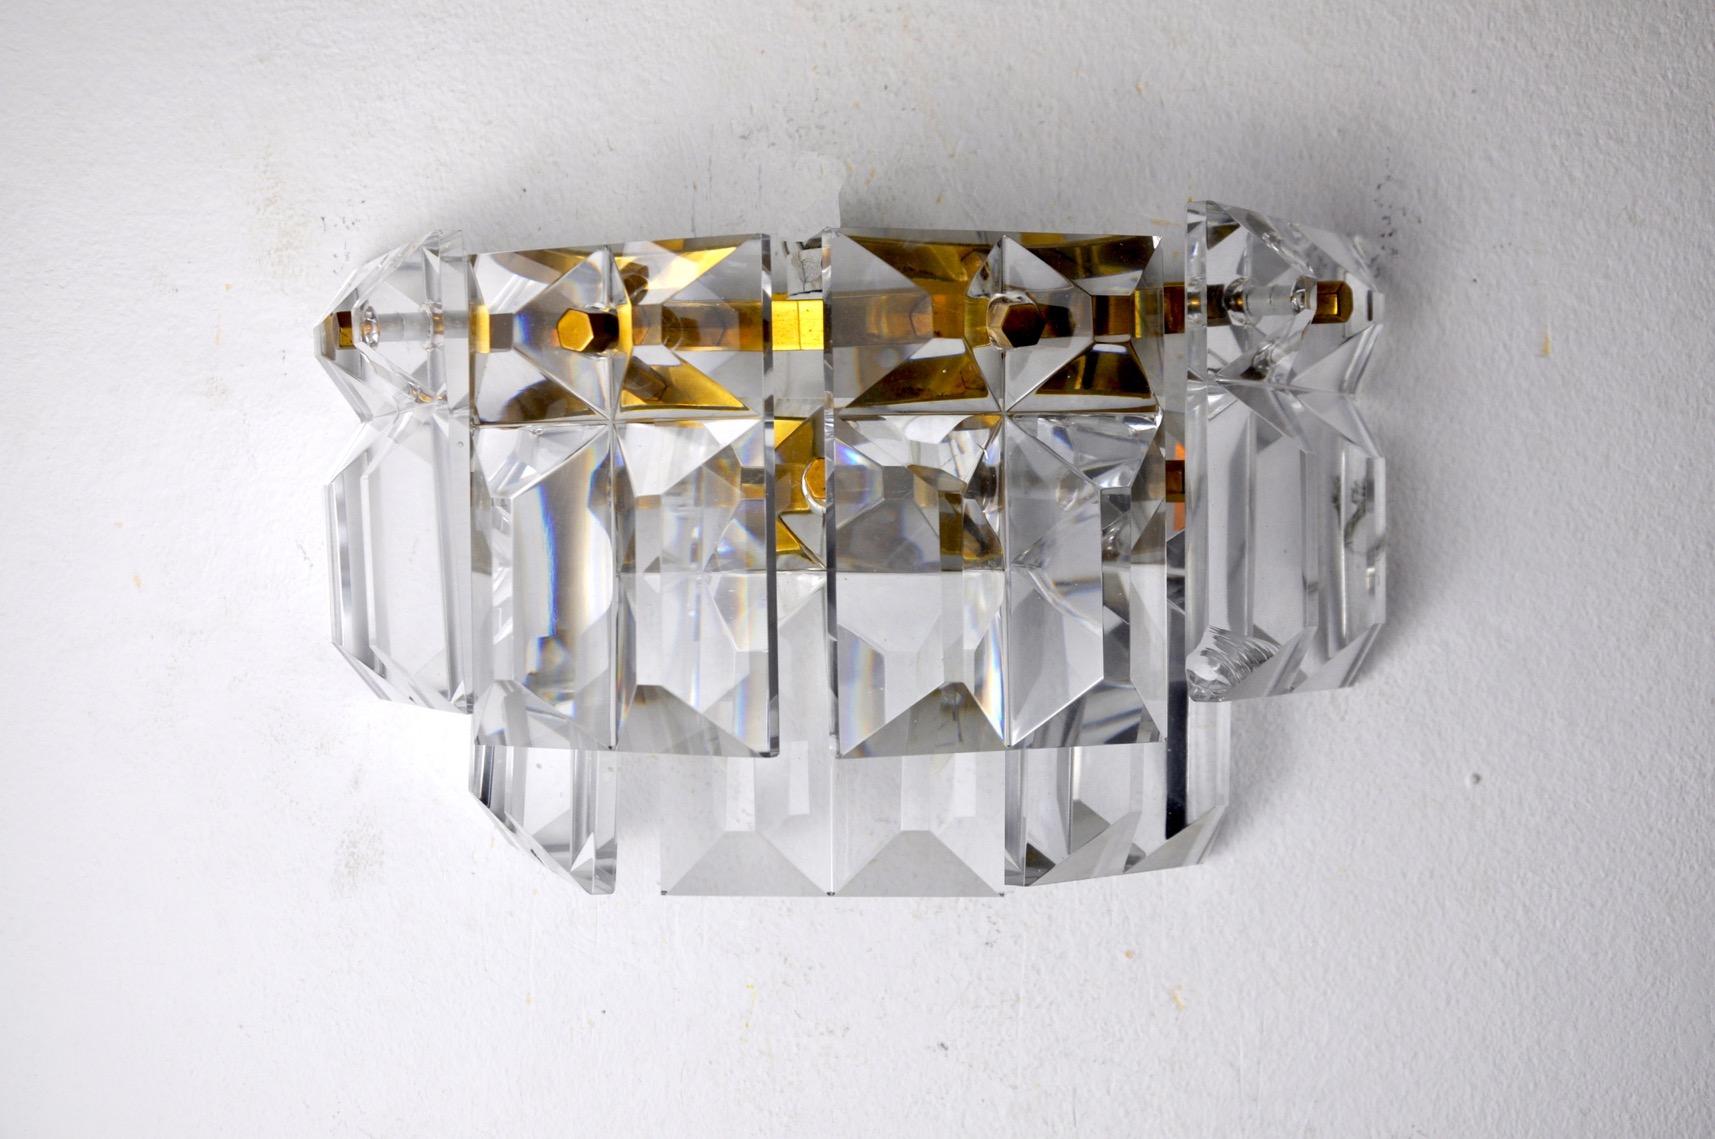 Hervorragende Kinkeldey-Applikation, entworfen und hergestellt in Deutschland in den 1970er Jahren. Geschliffene und verteilte Kristalle auf einer goldenen Metallstruktur. Sehr schönes Design-Objekt, das Ihr Interieur schön beleuchten wird. Geprüfte